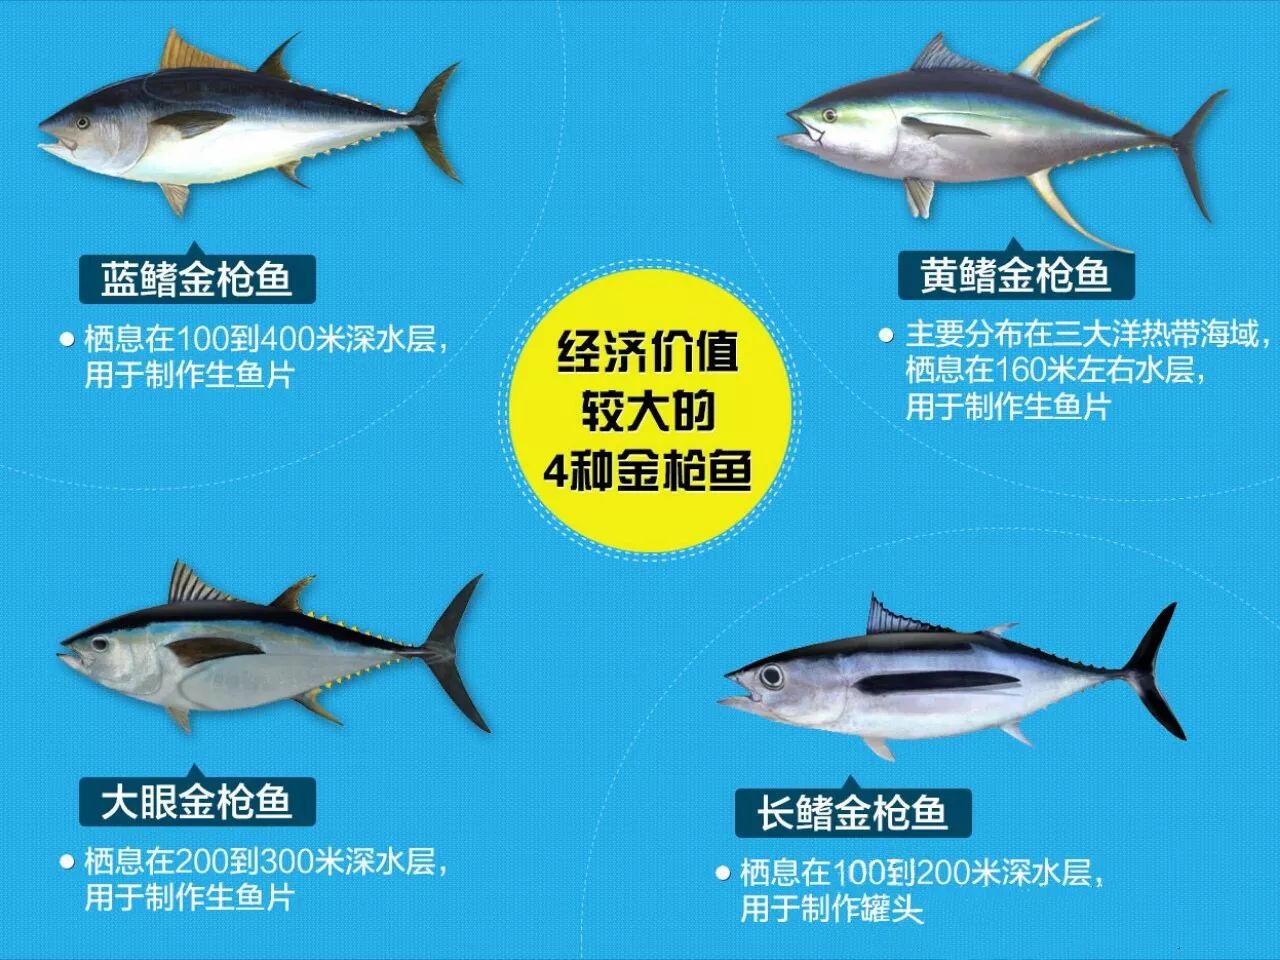 96%以上都是大目金枪鱼,黄鳍金枪鱼和长鳍金枪鱼,蓝鳍金枪鱼产量极少